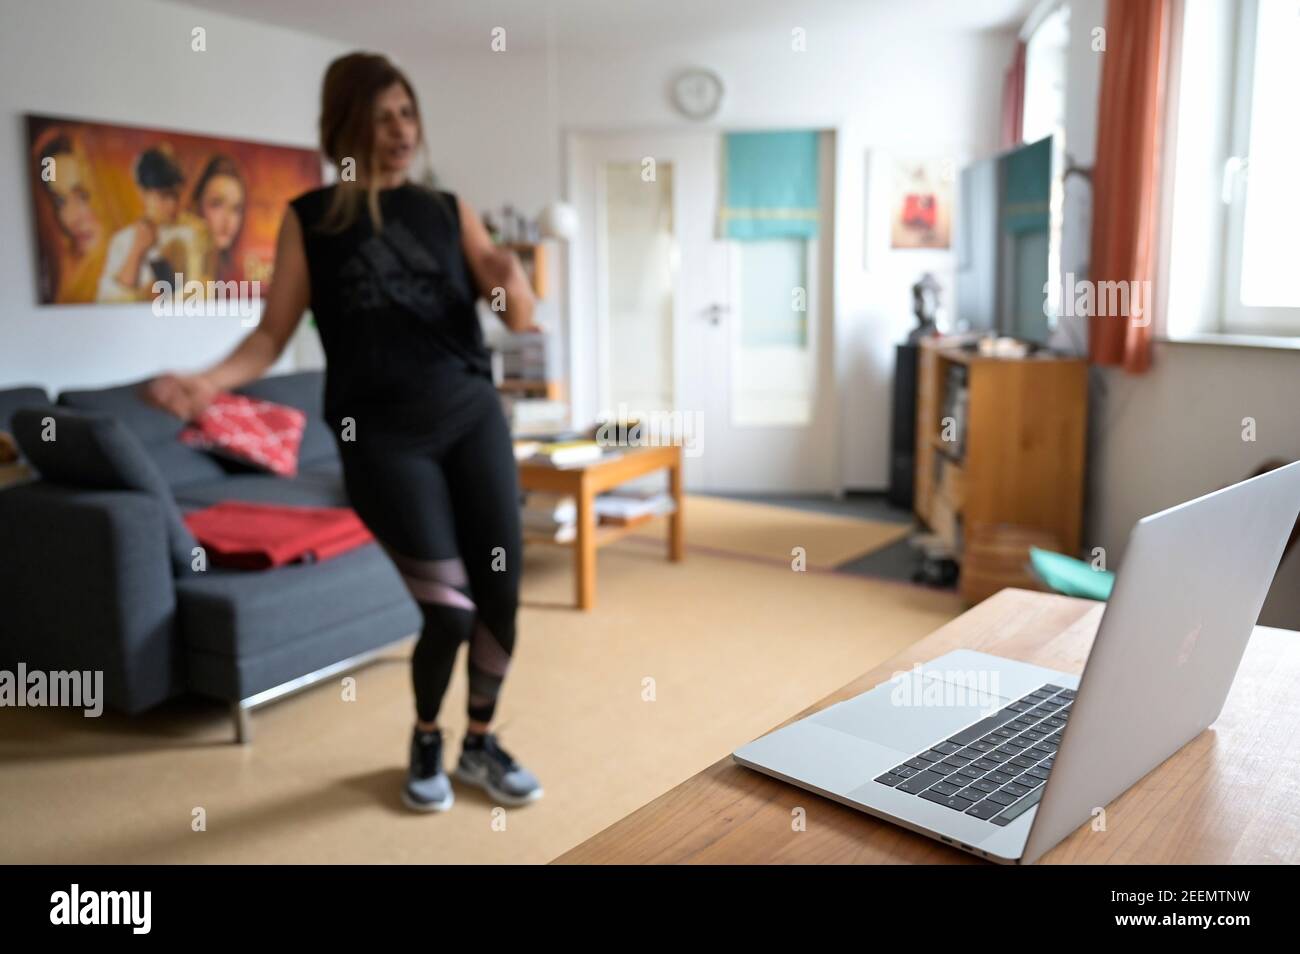 ALLEMAGNE, Hambourg, corona pandémie, jeune femme faisant du sport à la maison avec la diffusion en ligne de club de sport, Apple macbook écran avec Zumba danse session Banque D'Images